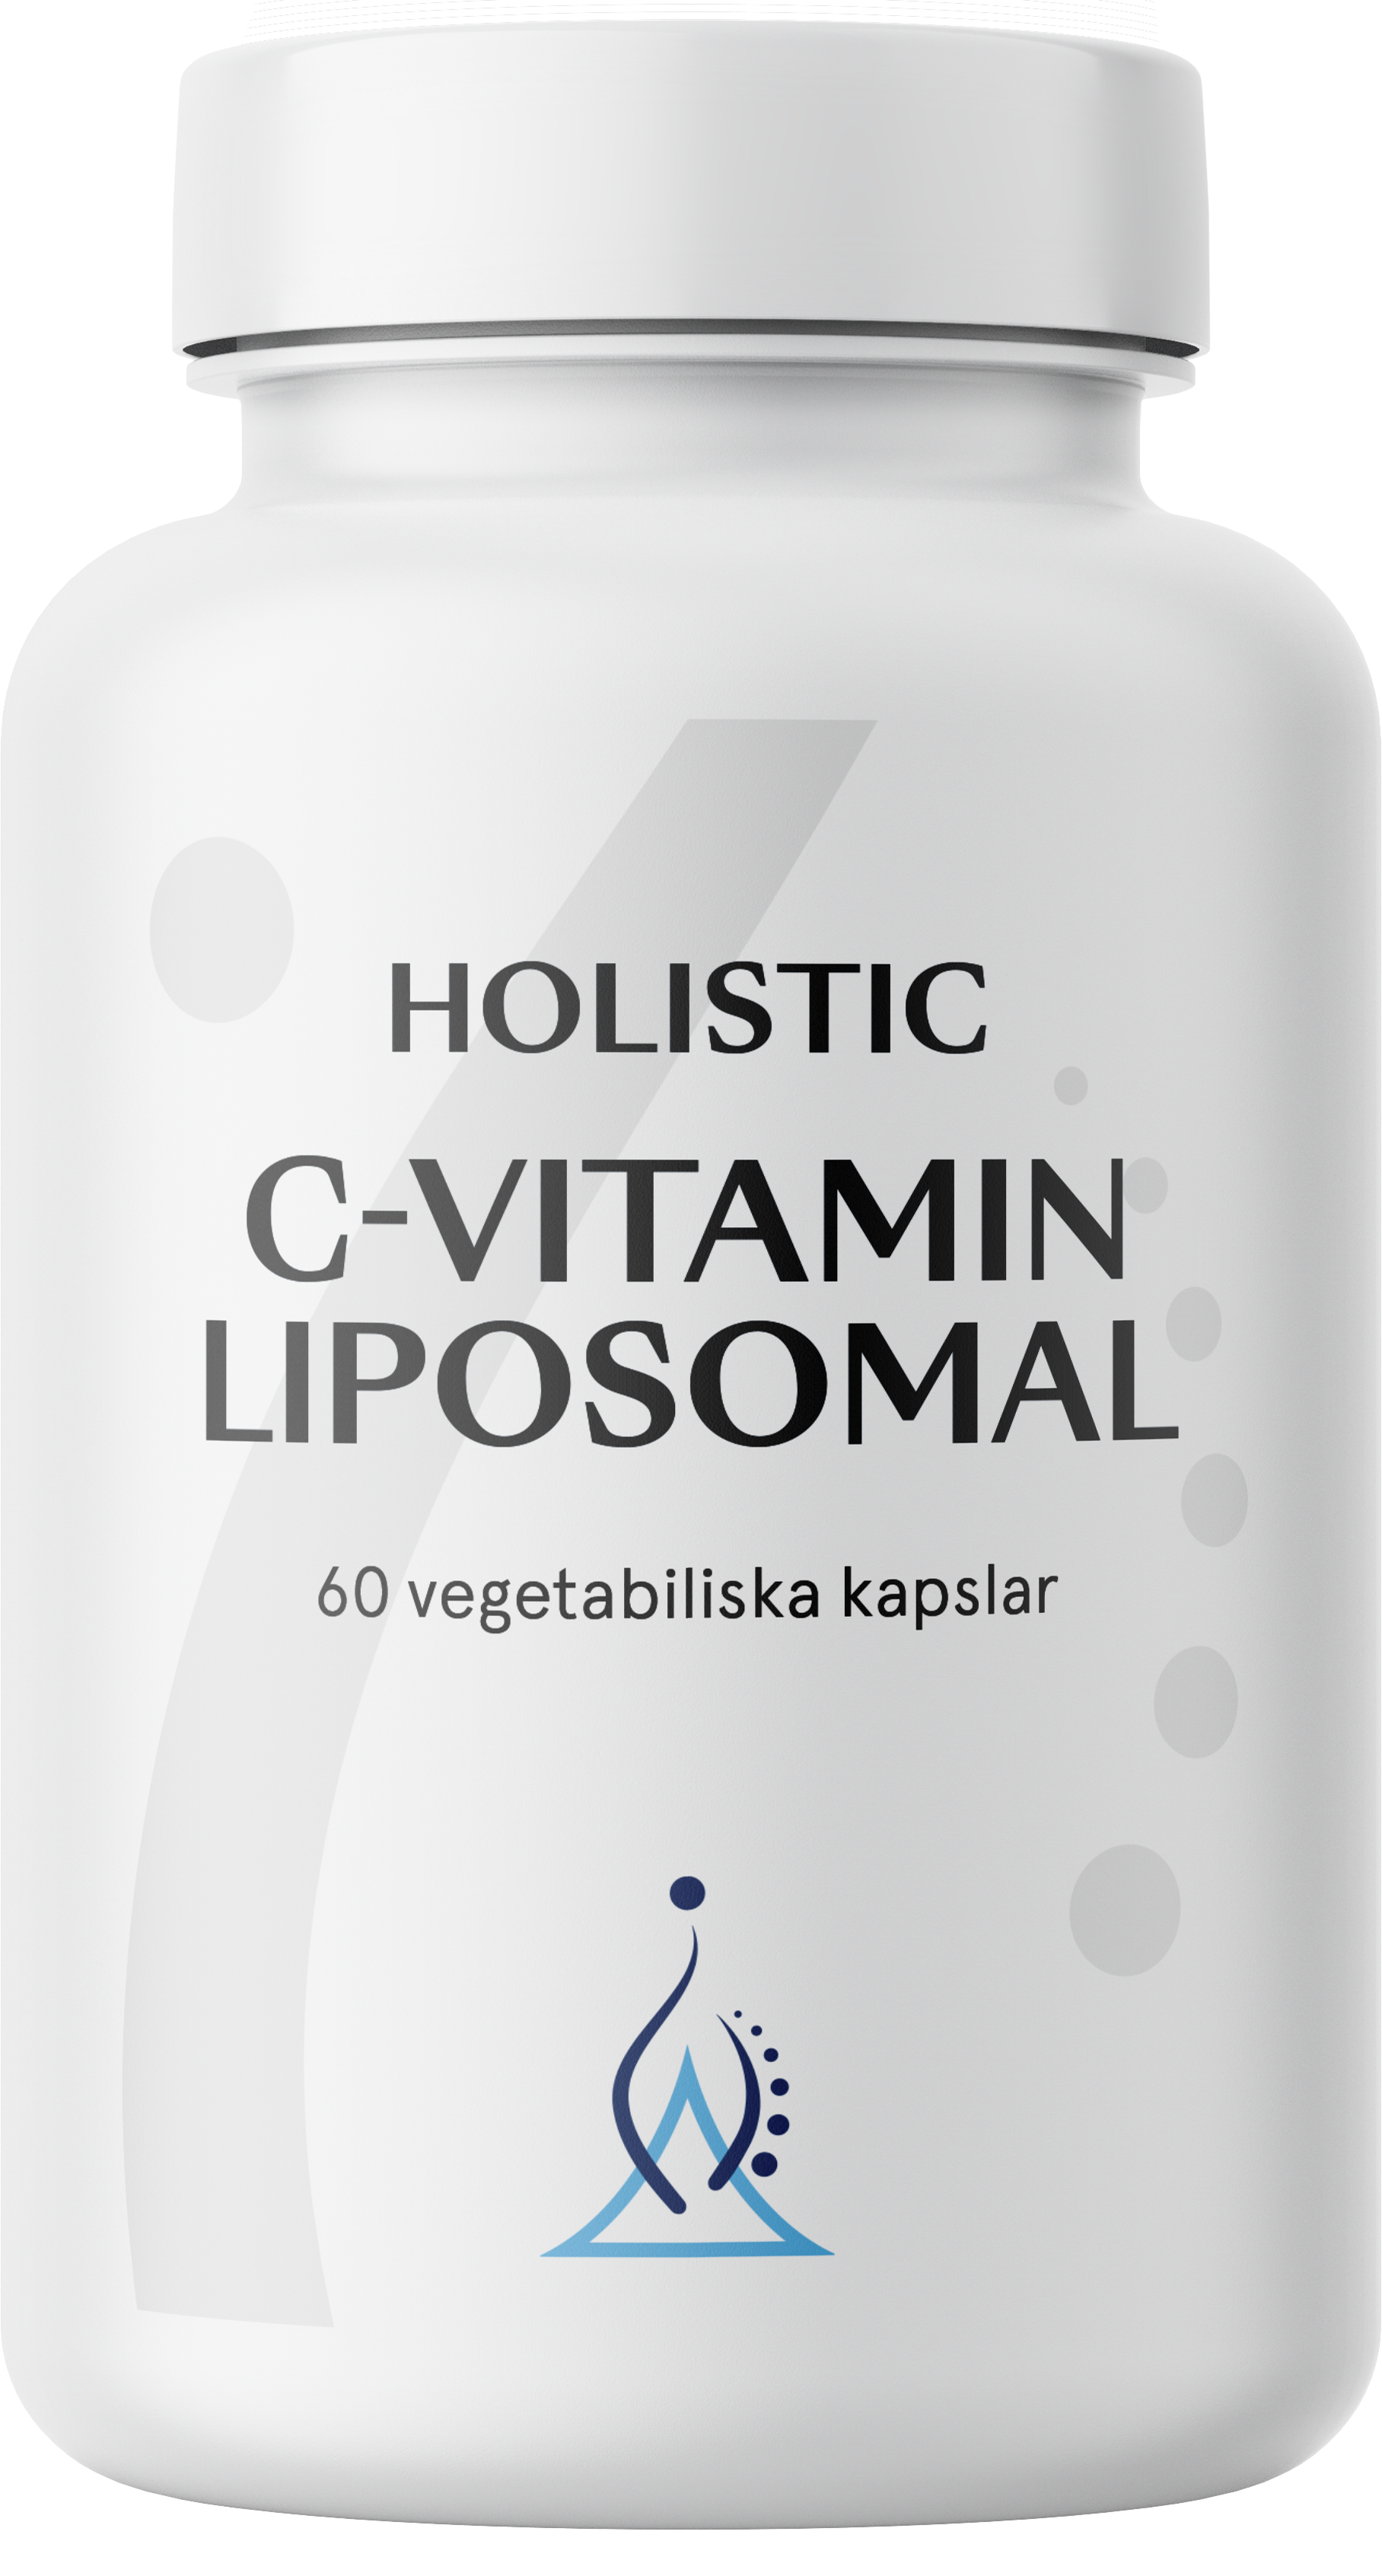 Holistic C-vitamin liposomal 60 st